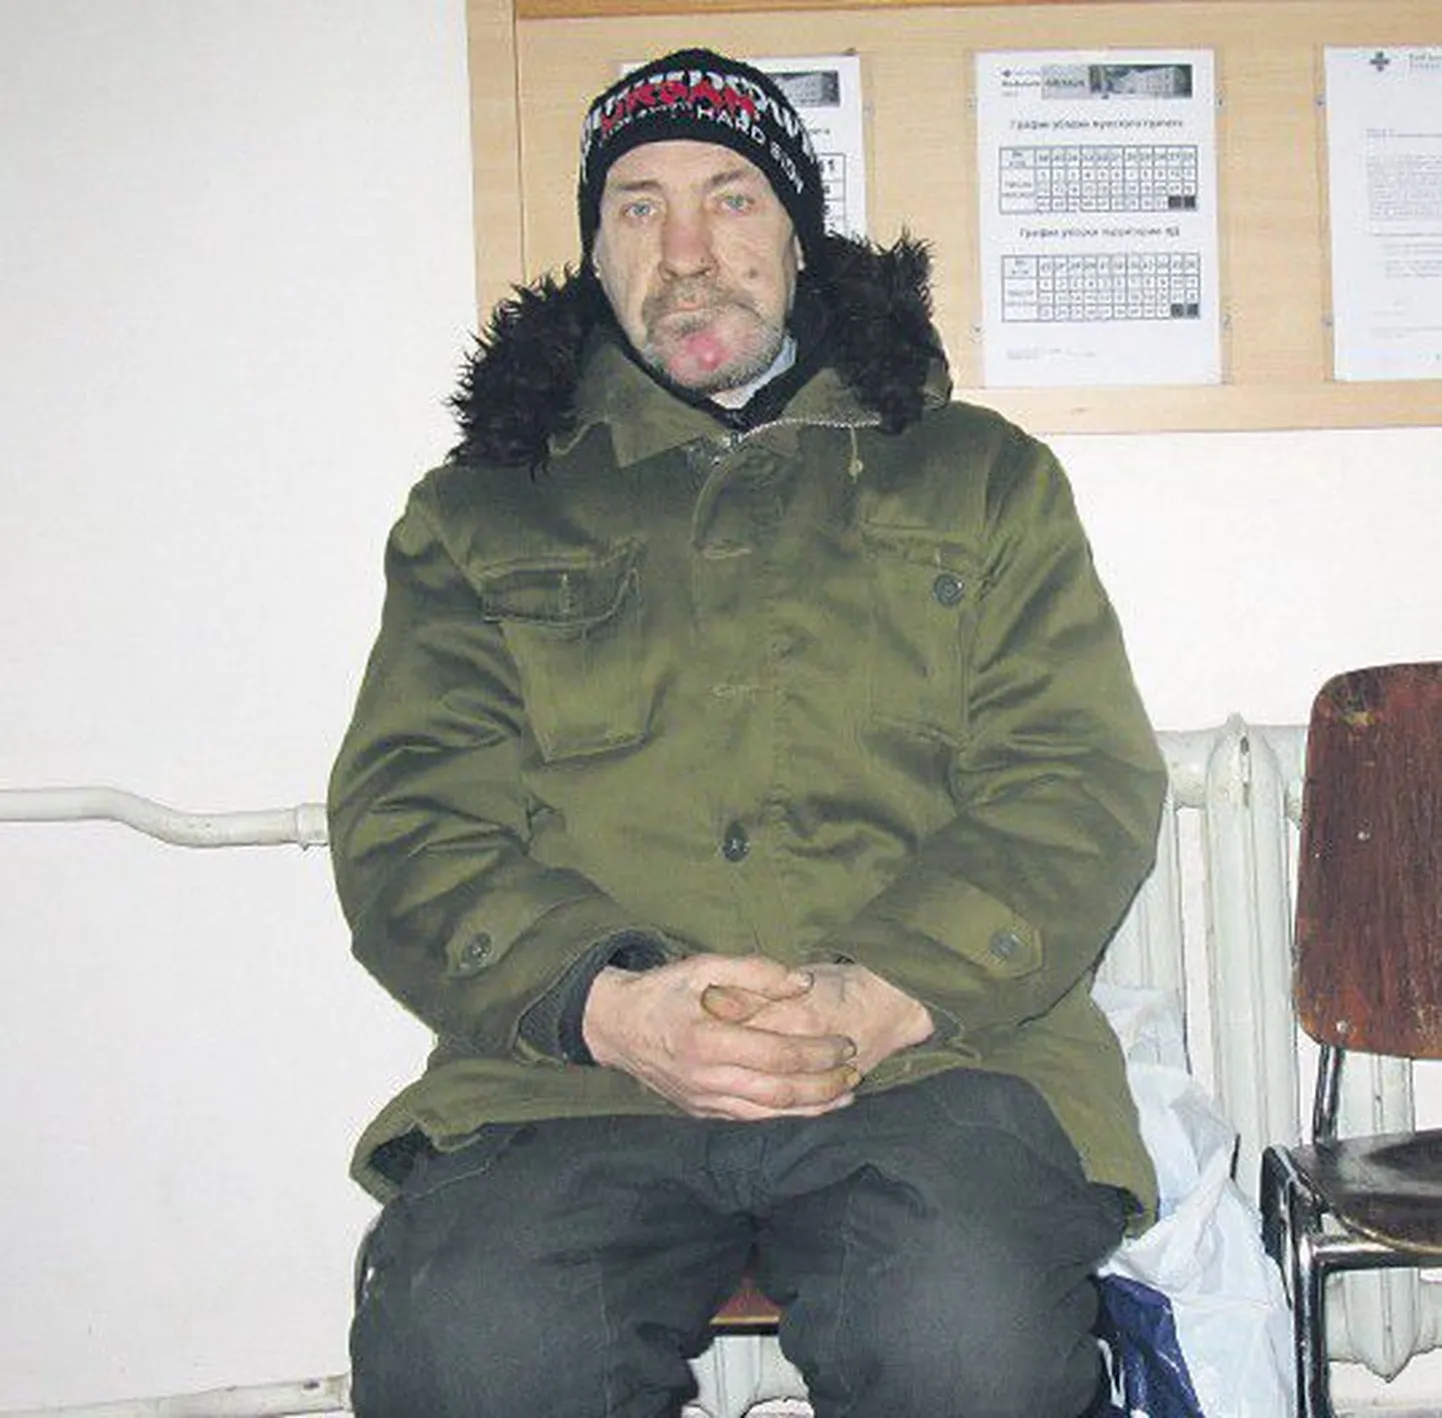 Нарвский бездомный Вячеслав Рябинин — инвалид. Он мечтает о доме престарелых, где всегда тепло. Пока в поисках тепла он вынужден прятаться в подъездах жилых домов и супермаркетах.